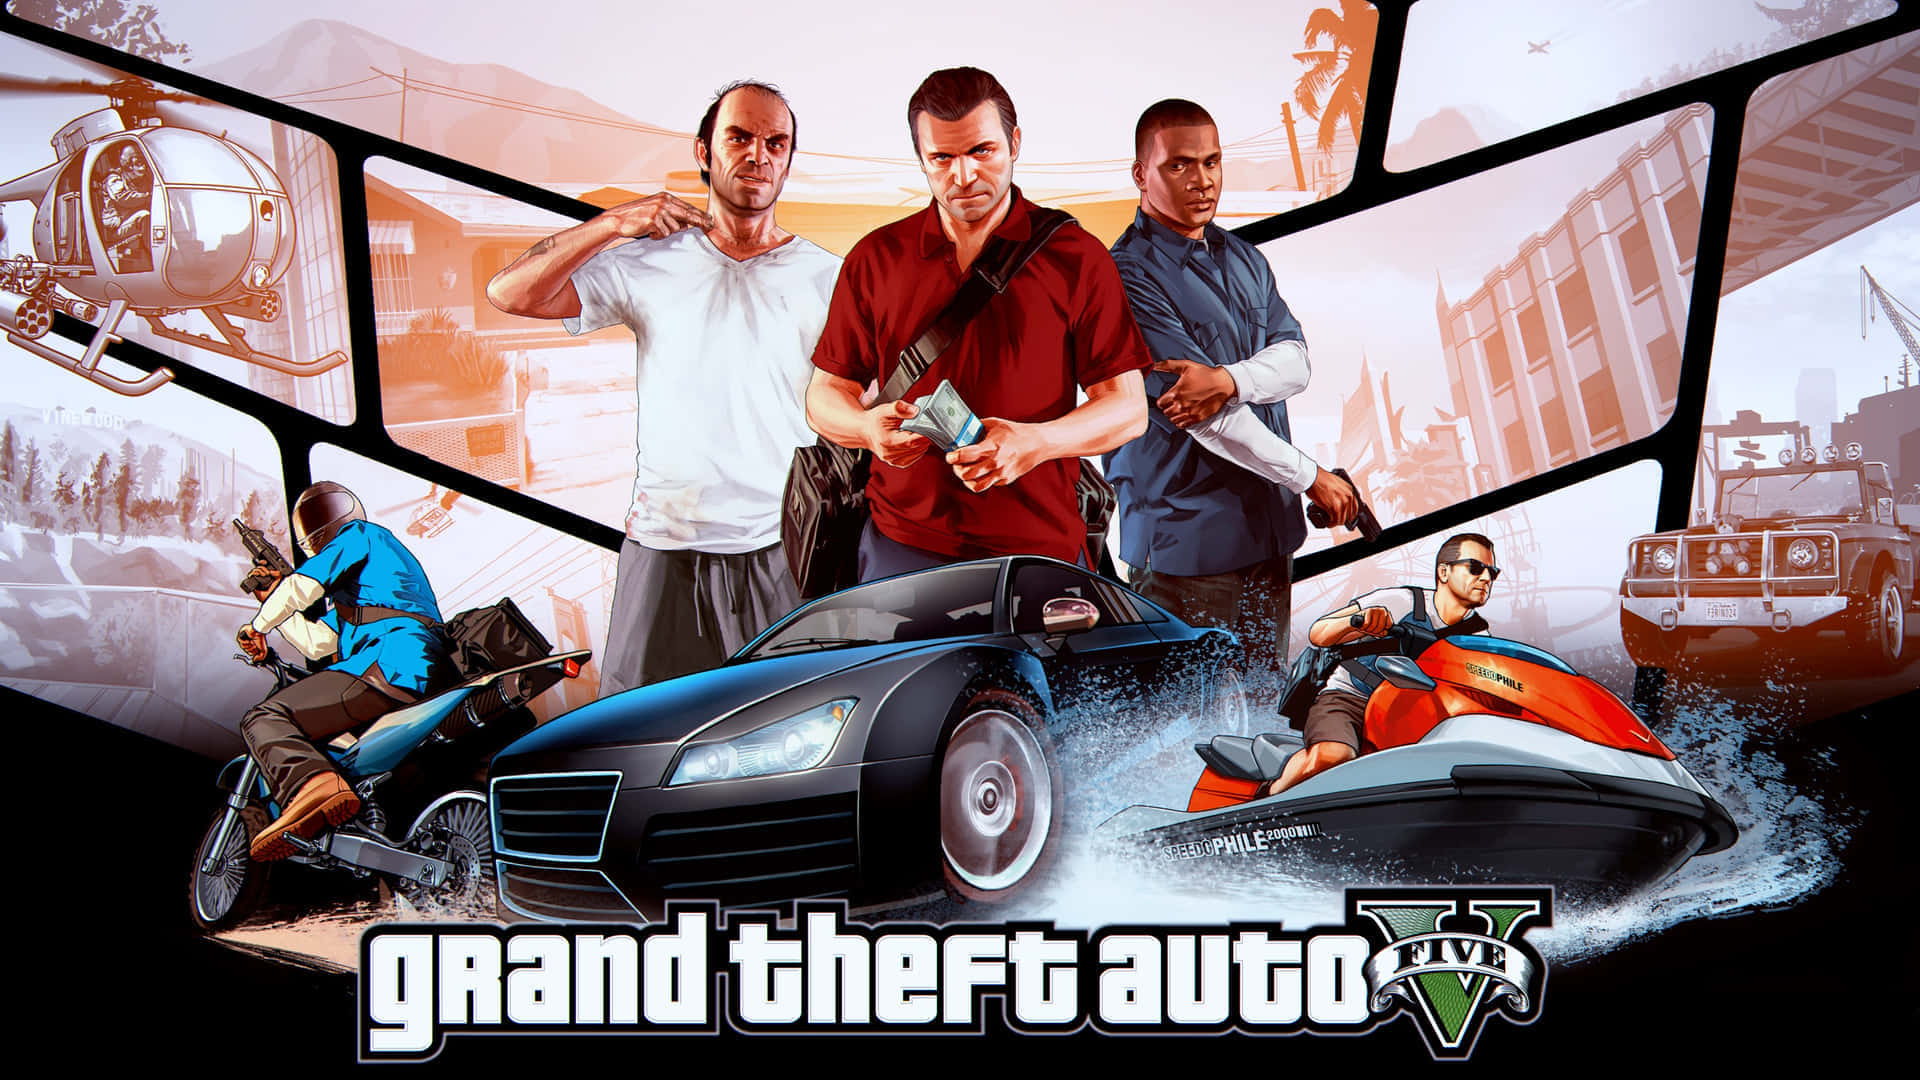 Gta5 Har Revolutionerat Upplevelsen Av Sandbox Datorspel. Skapa Din Egen Väg. Beskrivning: Grand Theft Auto 5 Sänker Spelare I En Gigantisk Öppen Värld Med Oändliga Möjligheter, Toppmoderna Grafik Och En Spännande Berättelse. Relaterade Sökord: Gta 5, Öppen Värld, Sandbox, Datorspel, Rockstar, Xbox, Playstation, Pc.